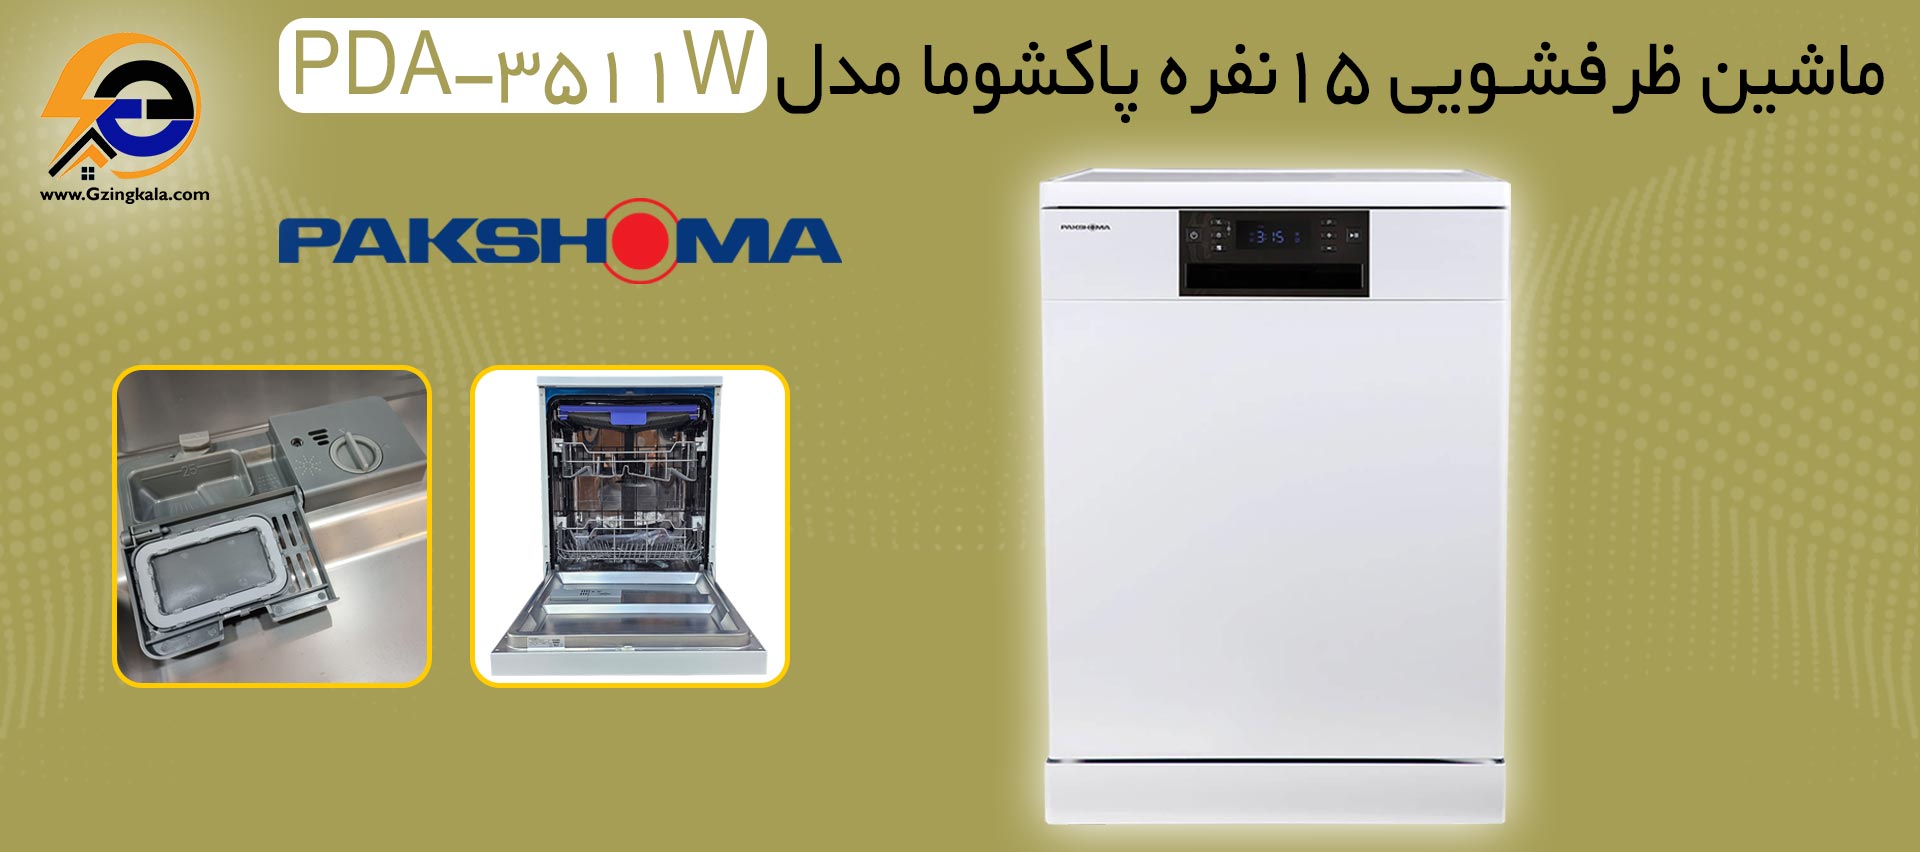 ماشین ظرفشویی 15نفره پاکشوما مدل PDA-3511W